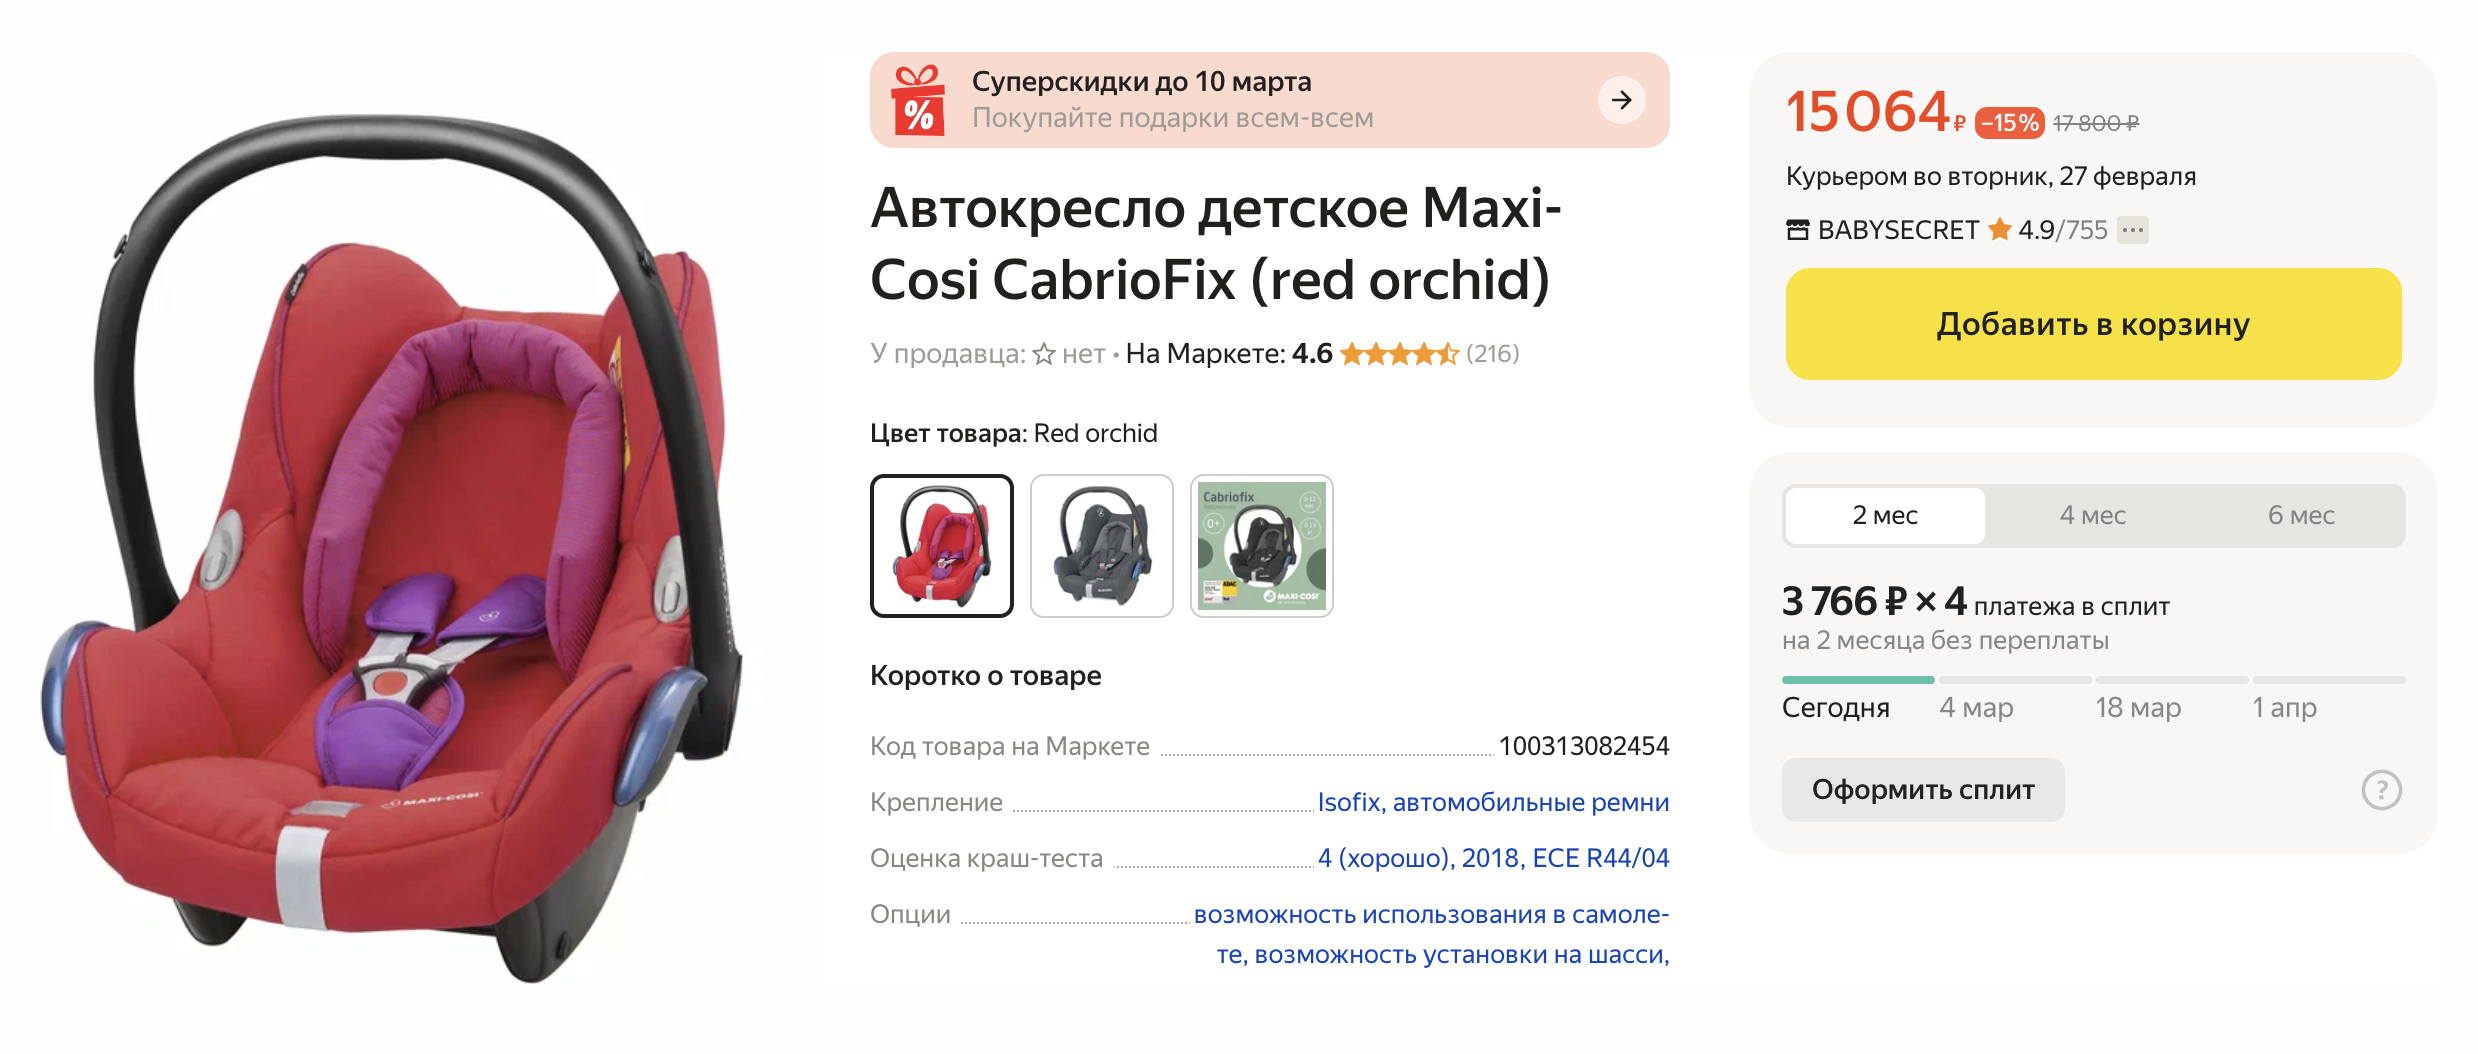 Автокресло Maxi-Cosi CabrioFix подойдет для использования в самолете. Источник: market.yandex.ru